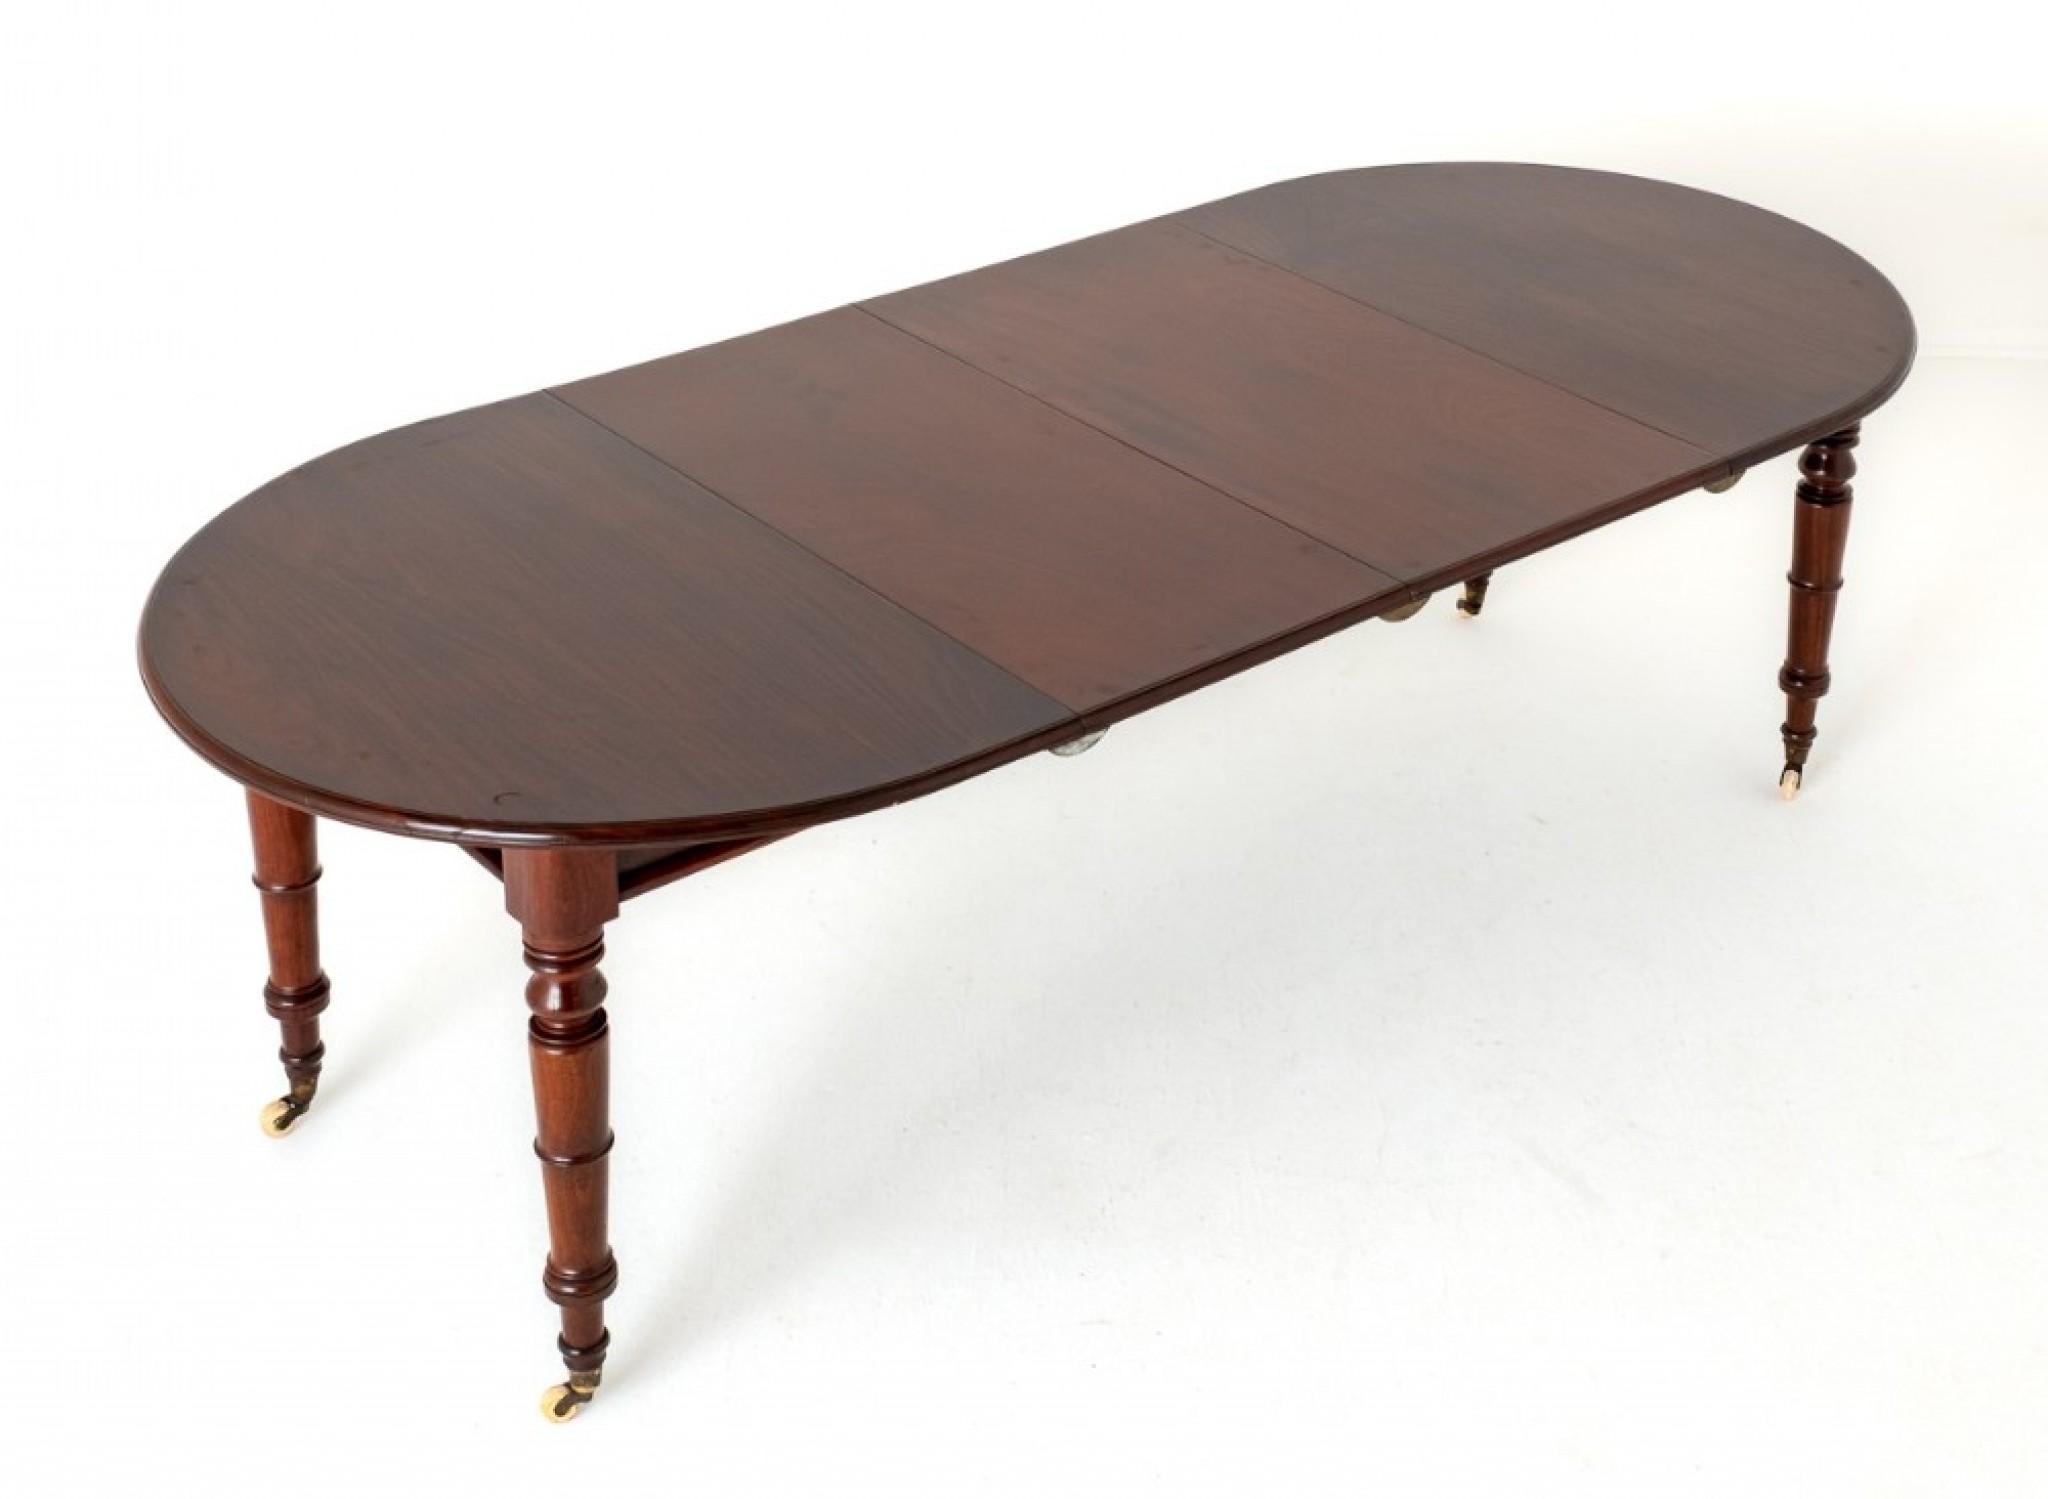 Viktorianischer Mahagoni-Esstisch mit 2 Blättern, ausziehbar.
CIRCA 1860
Dieser Esstisch steht auf knackig gedrechselten Beinen mit Rollen aus Messing und Porzellan.
Im geschlossenen Zustand hat der Tisch eine ovale Form.
Der Tisch lässt sich durch